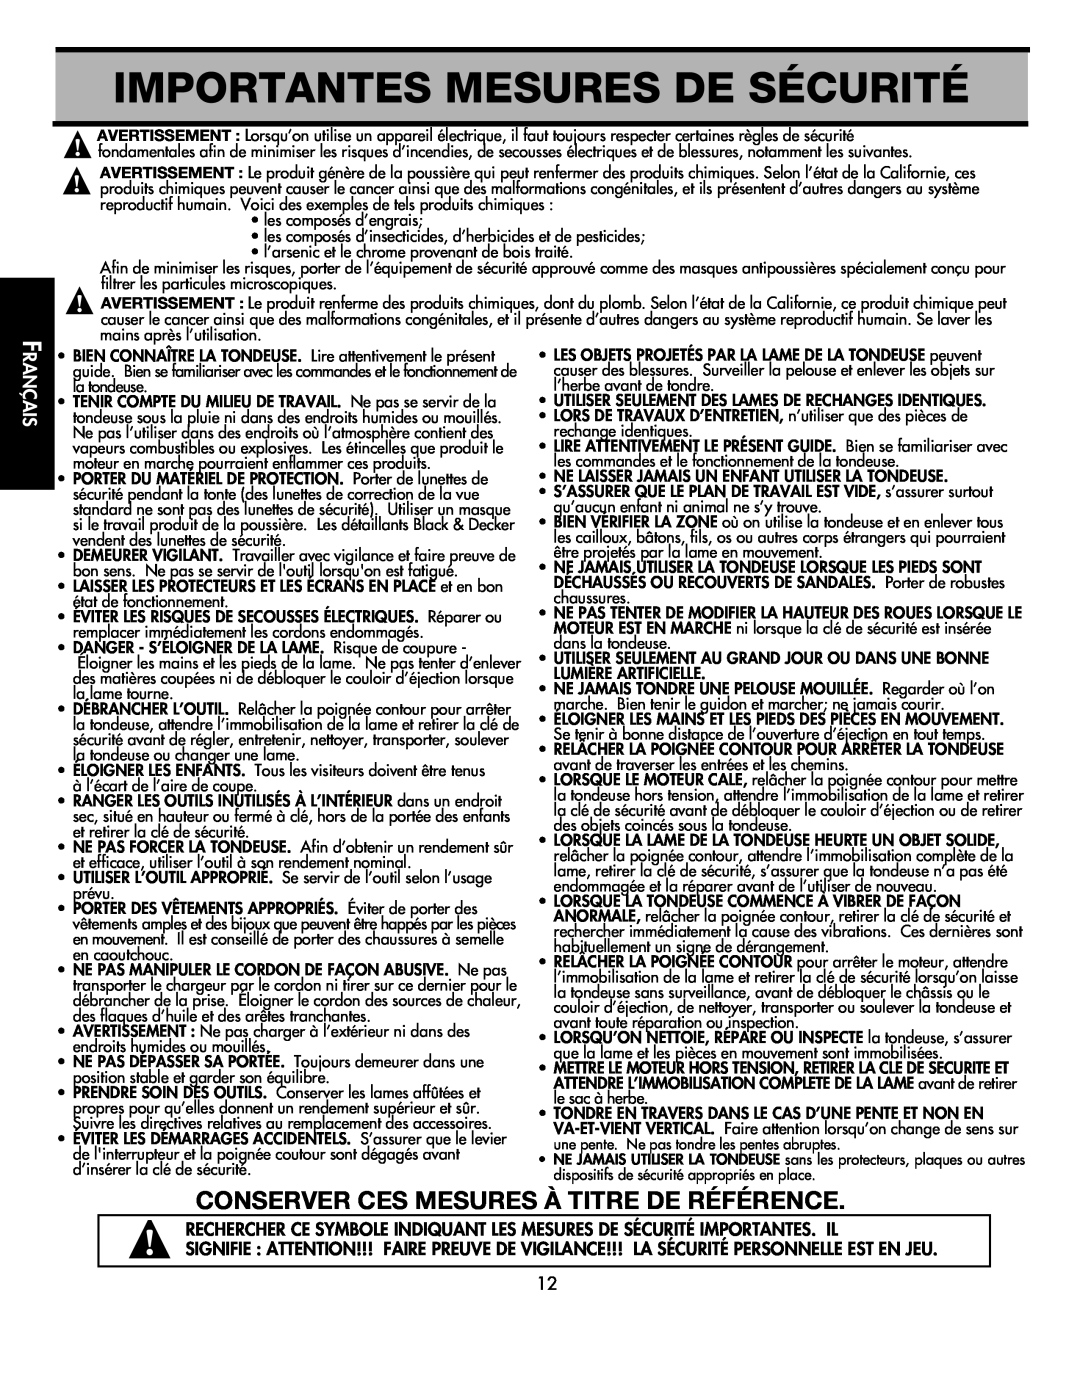 Black & Decker CMM1000 Importantes Mesures De Sécurité, Conserver Ces Mesures À Titre De Référence, Français 